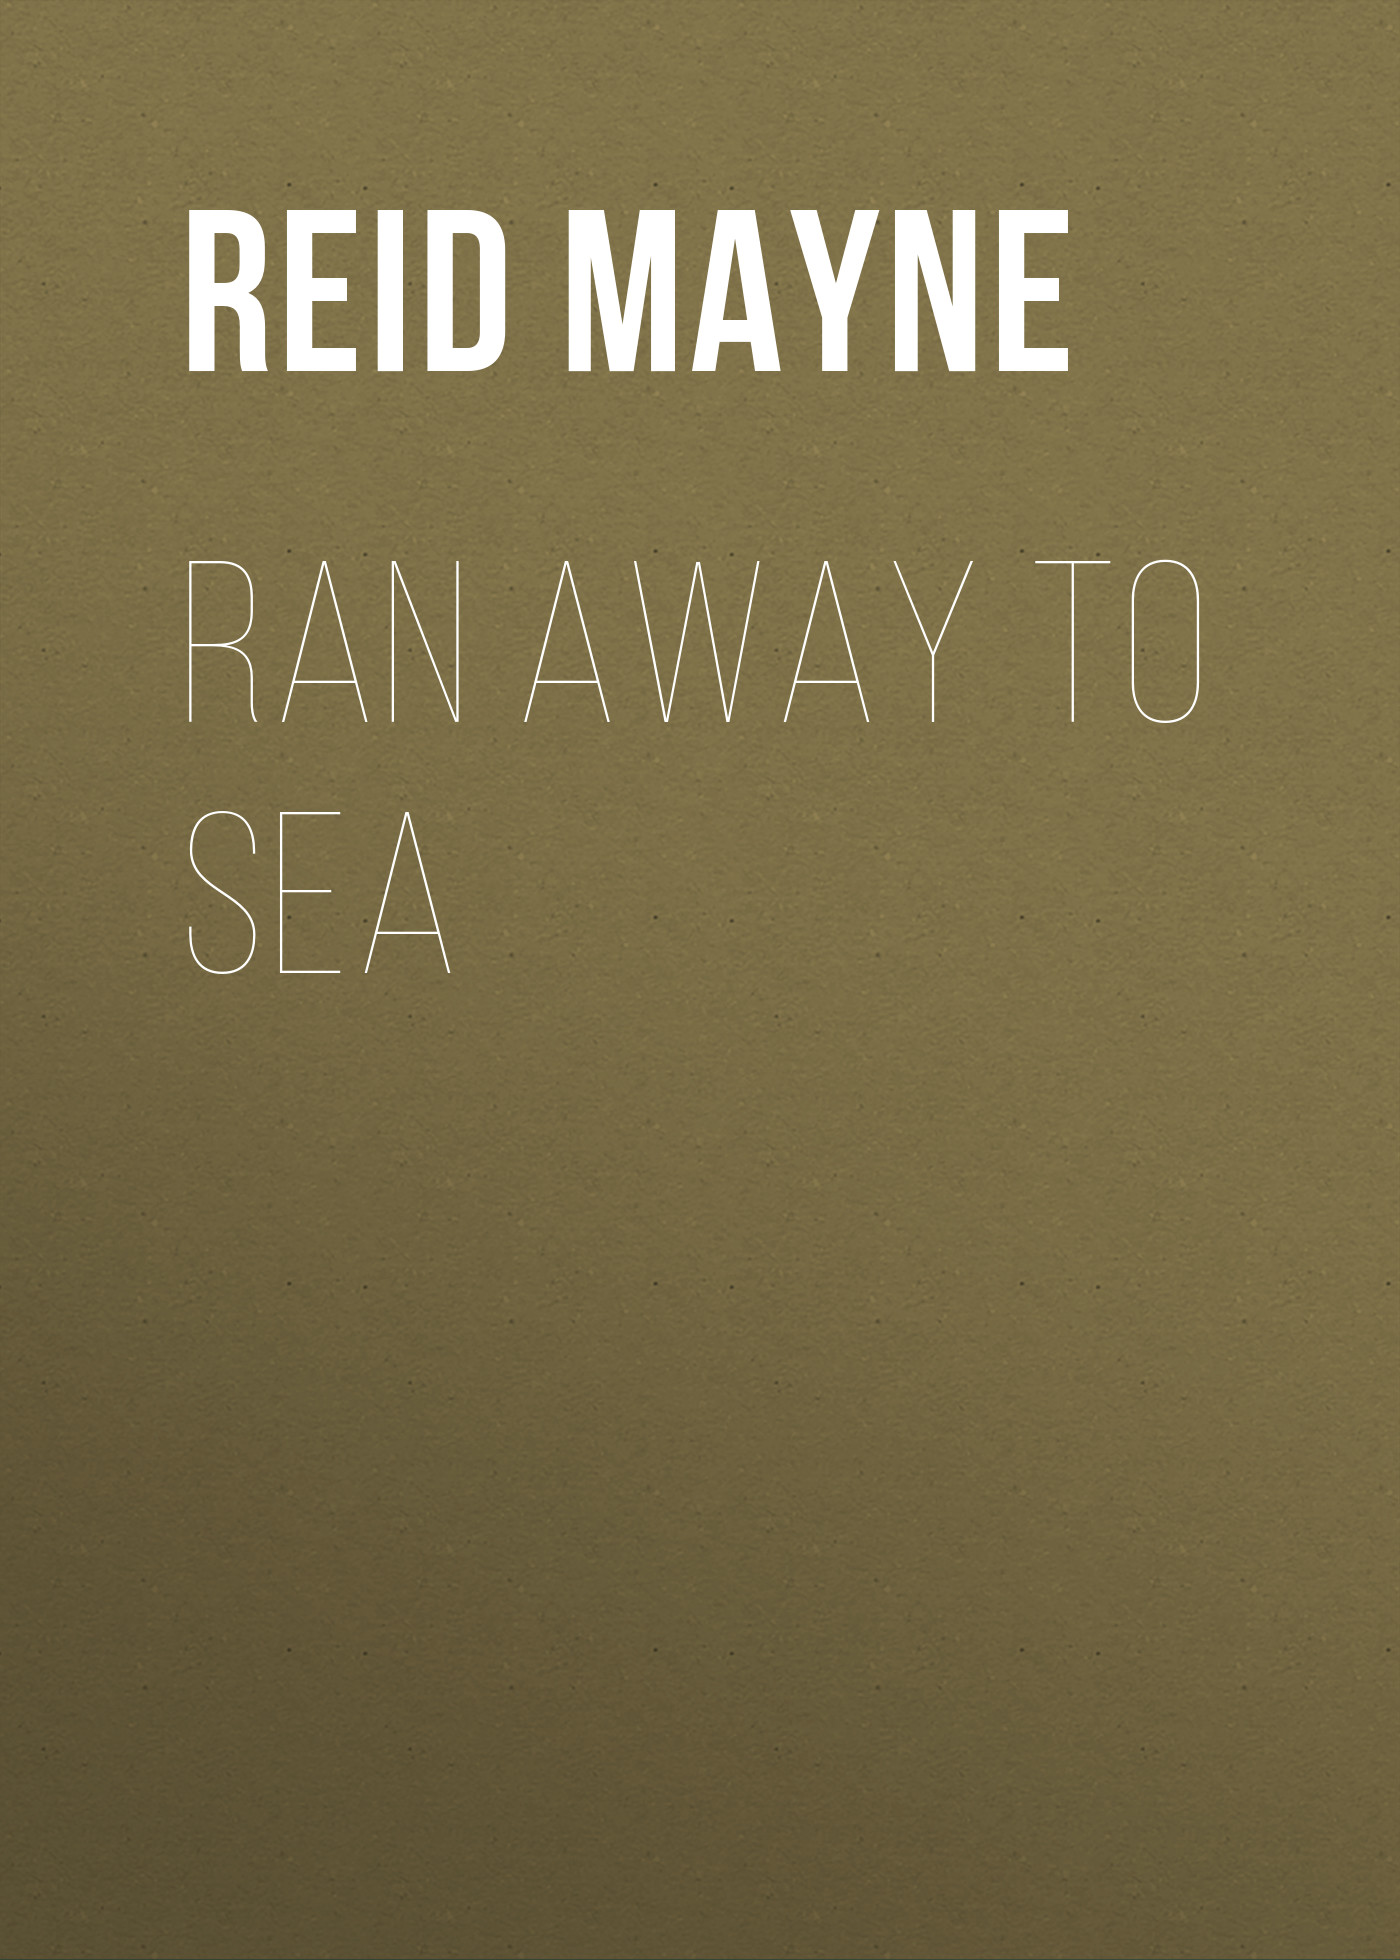 Книга Ran Away to Sea из серии , созданная Mayne Reid, может относится к жанру Литература 19 века, Зарубежная старинная литература, Зарубежная классика, Зарубежные детские книги. Стоимость электронной книги Ran Away to Sea с идентификатором 25449332 составляет 0 руб.